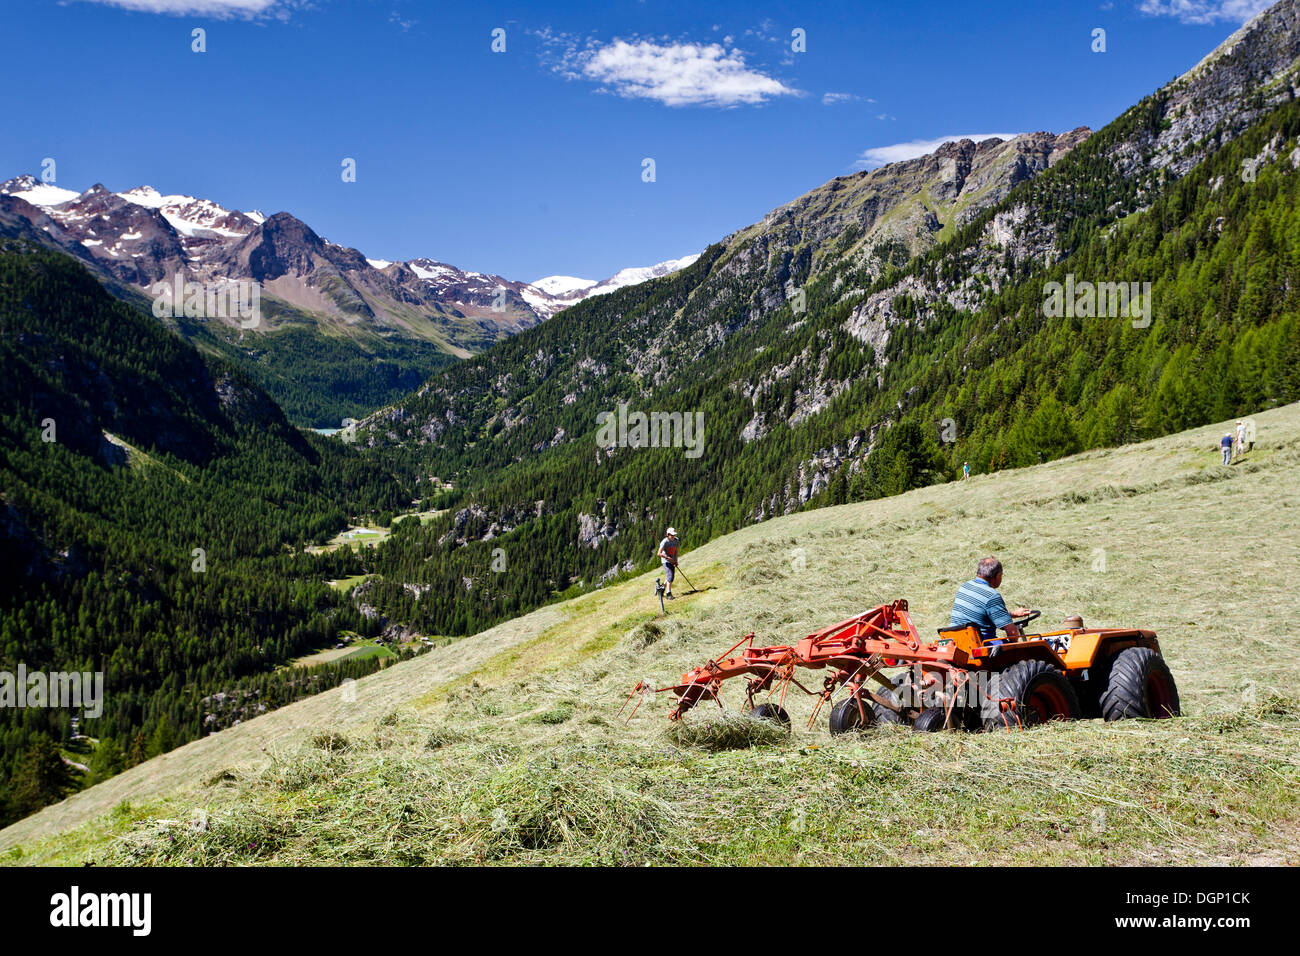 Bergbauern machen Heu, in der Nähe von Stallwies, Martelltal Tal, Vinschgau, Provinz von Bolzano-Bozen, Italien, Europa Stockfoto